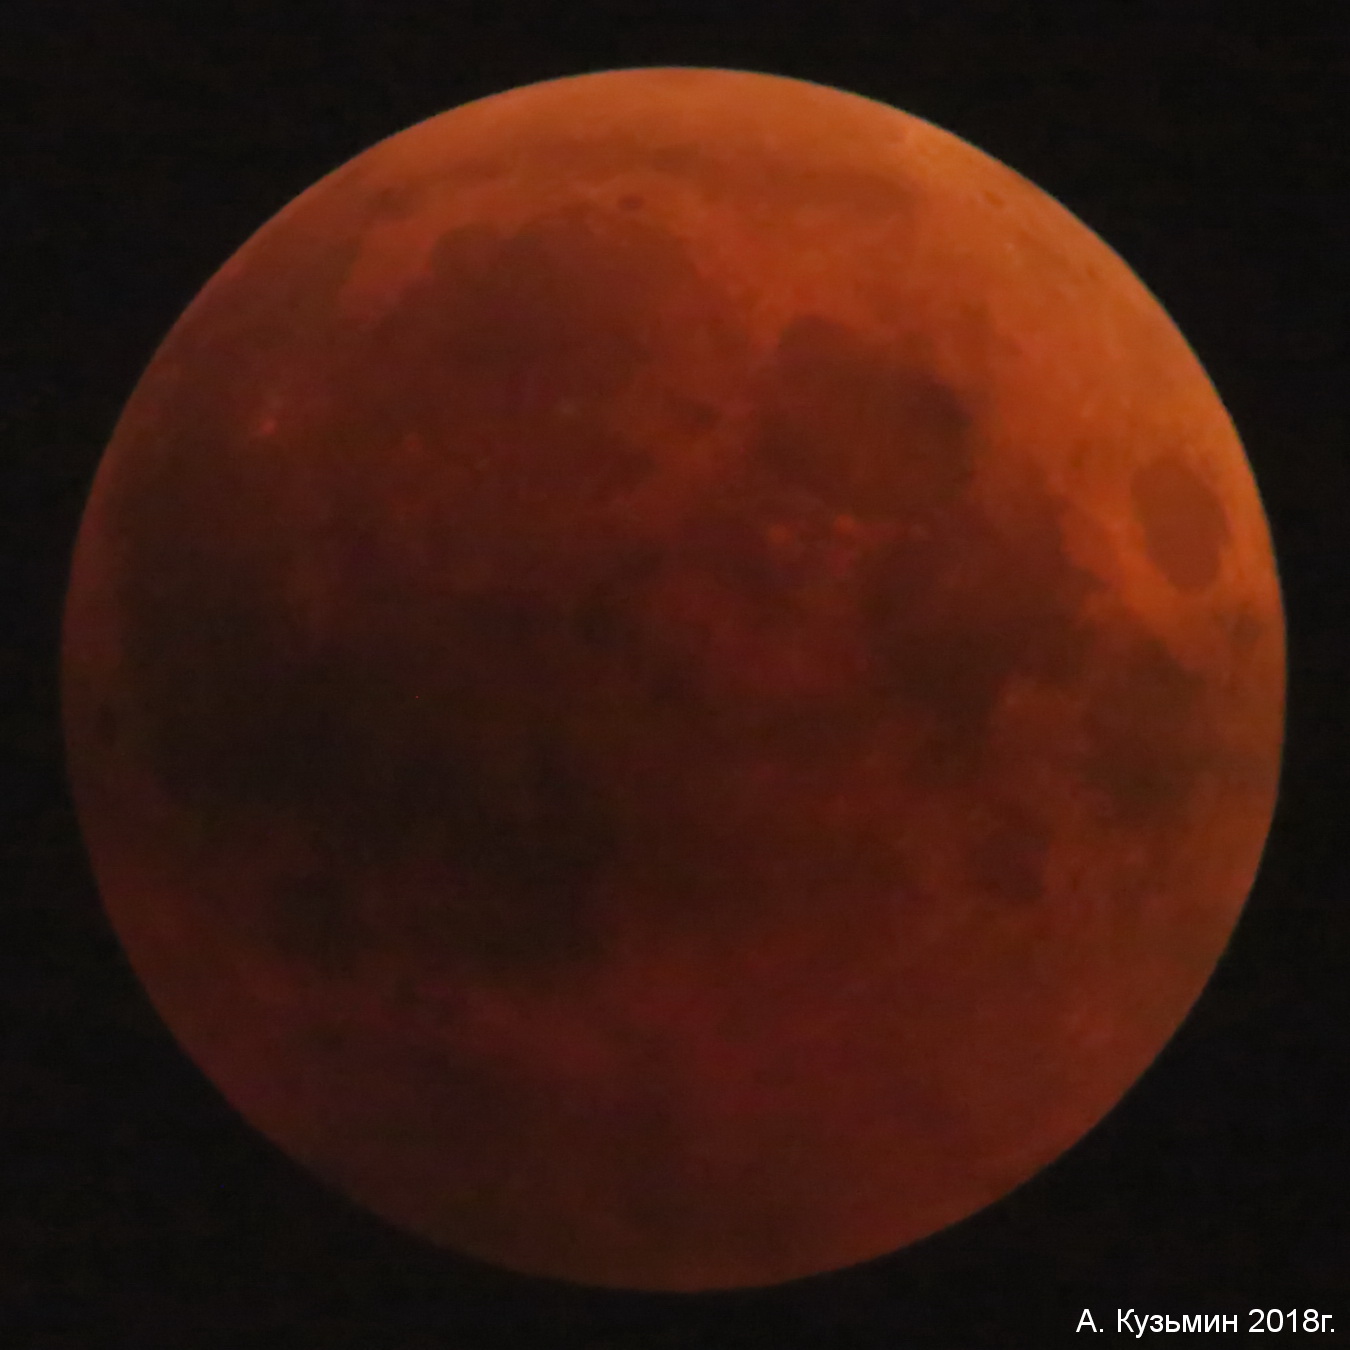  Затмение Луны 27 июля 2018г.